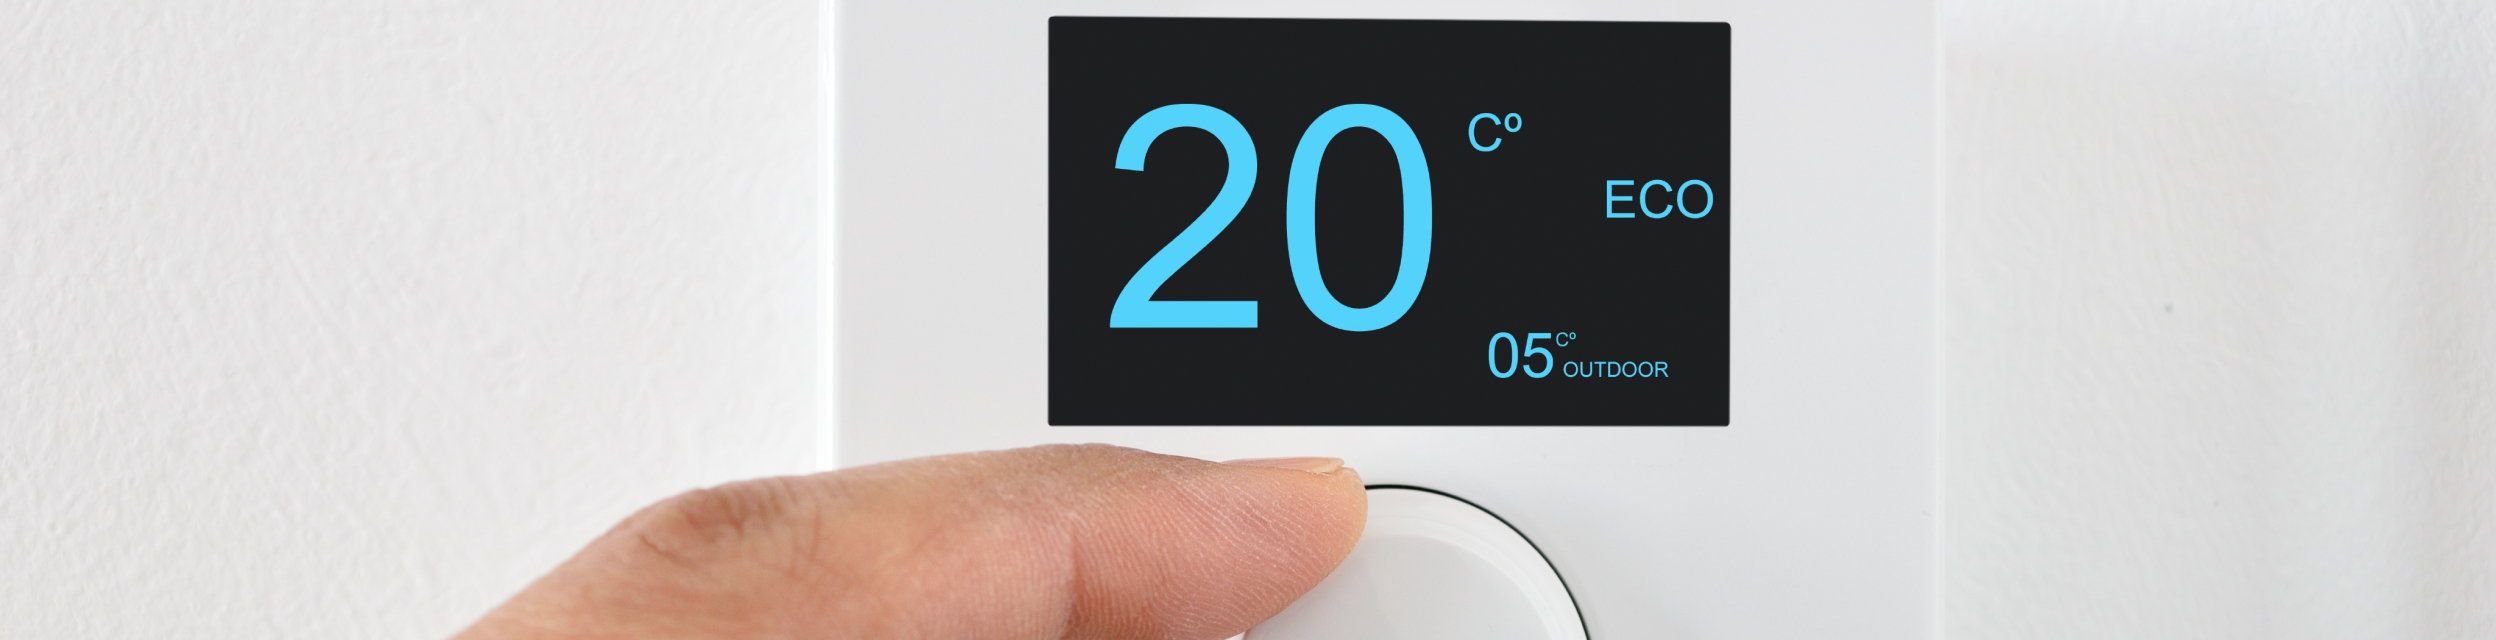 Elegir un termostato para la calefacción